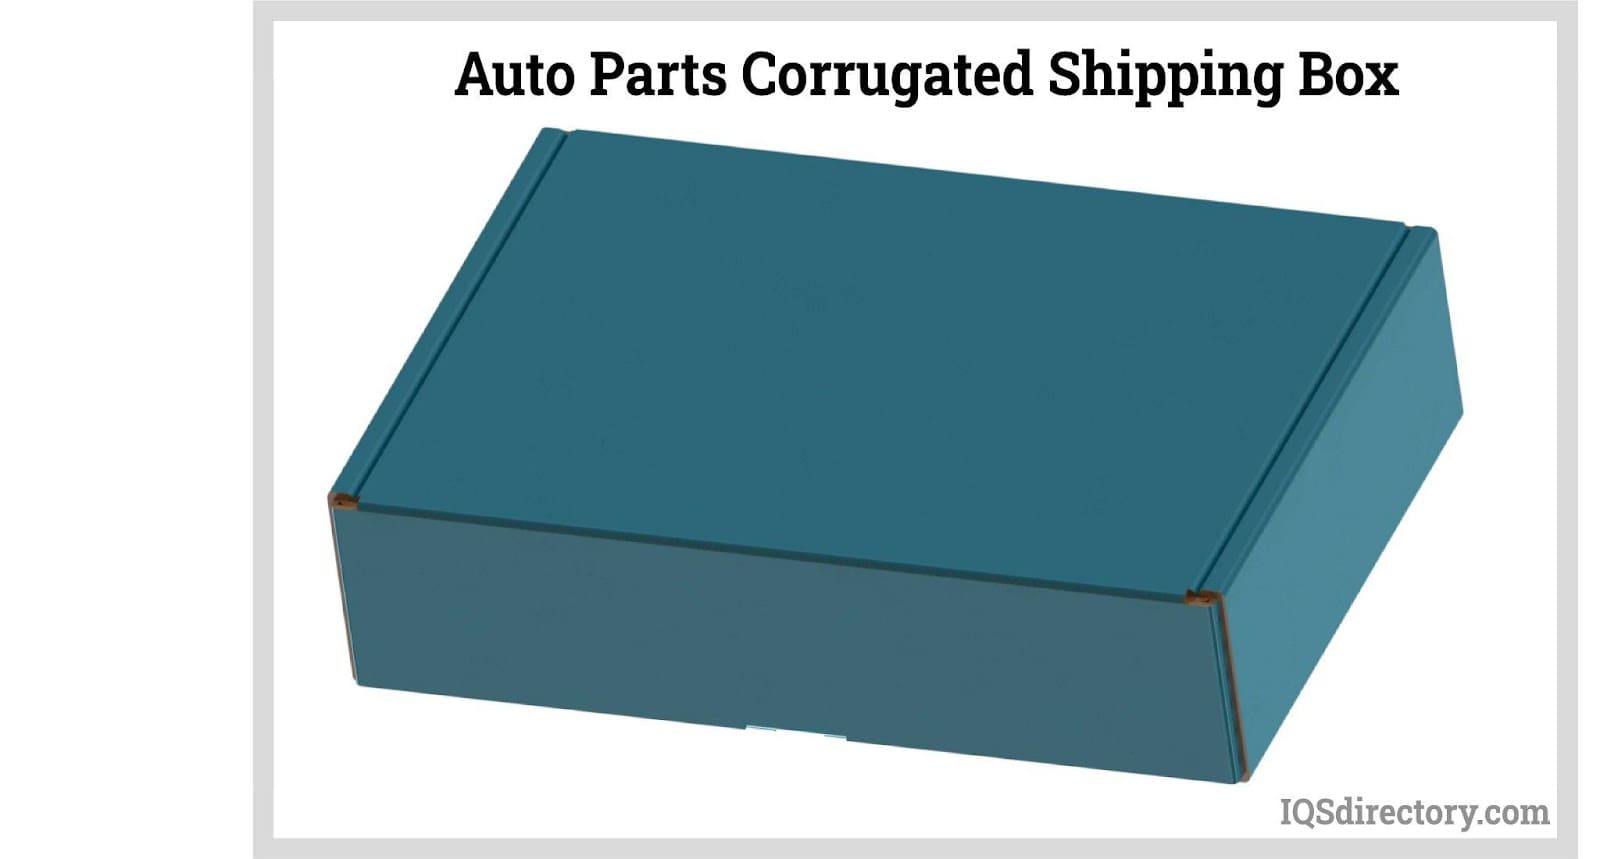 Auto Parts Corrugated Shipping Box